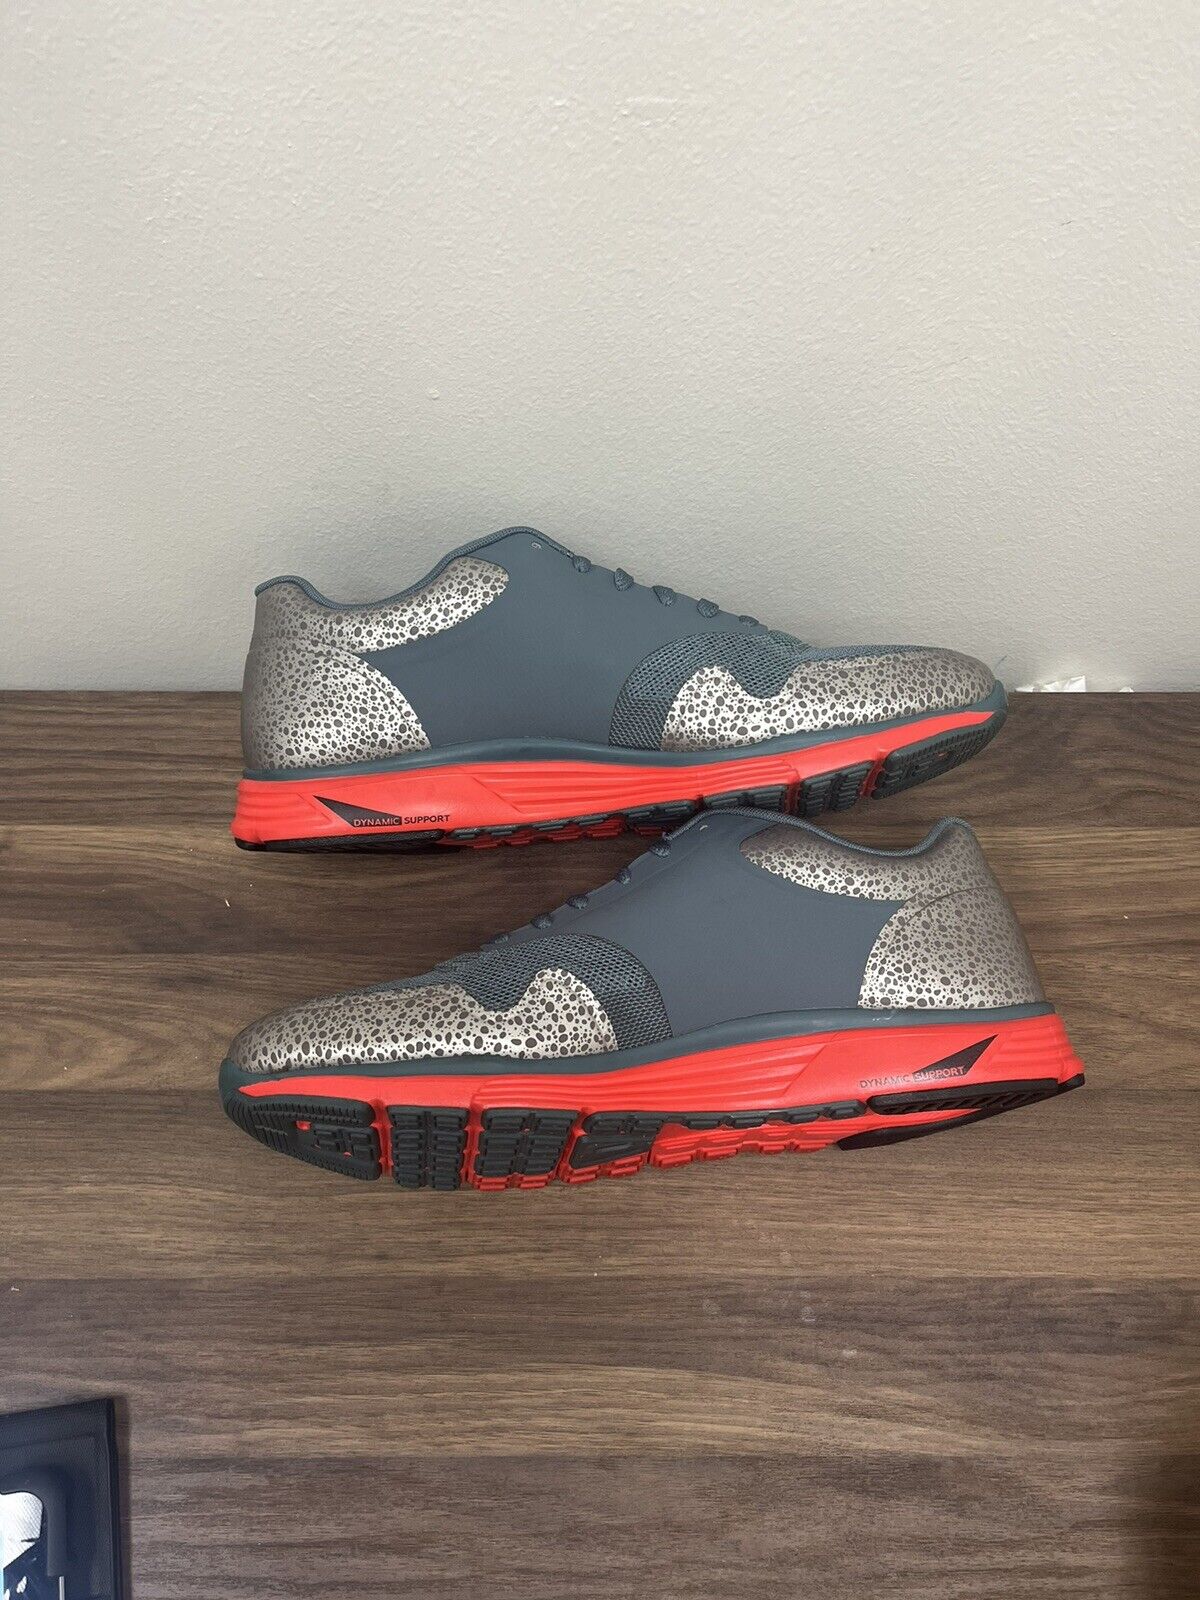 Nike Mens Lunar Safari 525059-370 Gray Running Shoes Sneakers Size 10